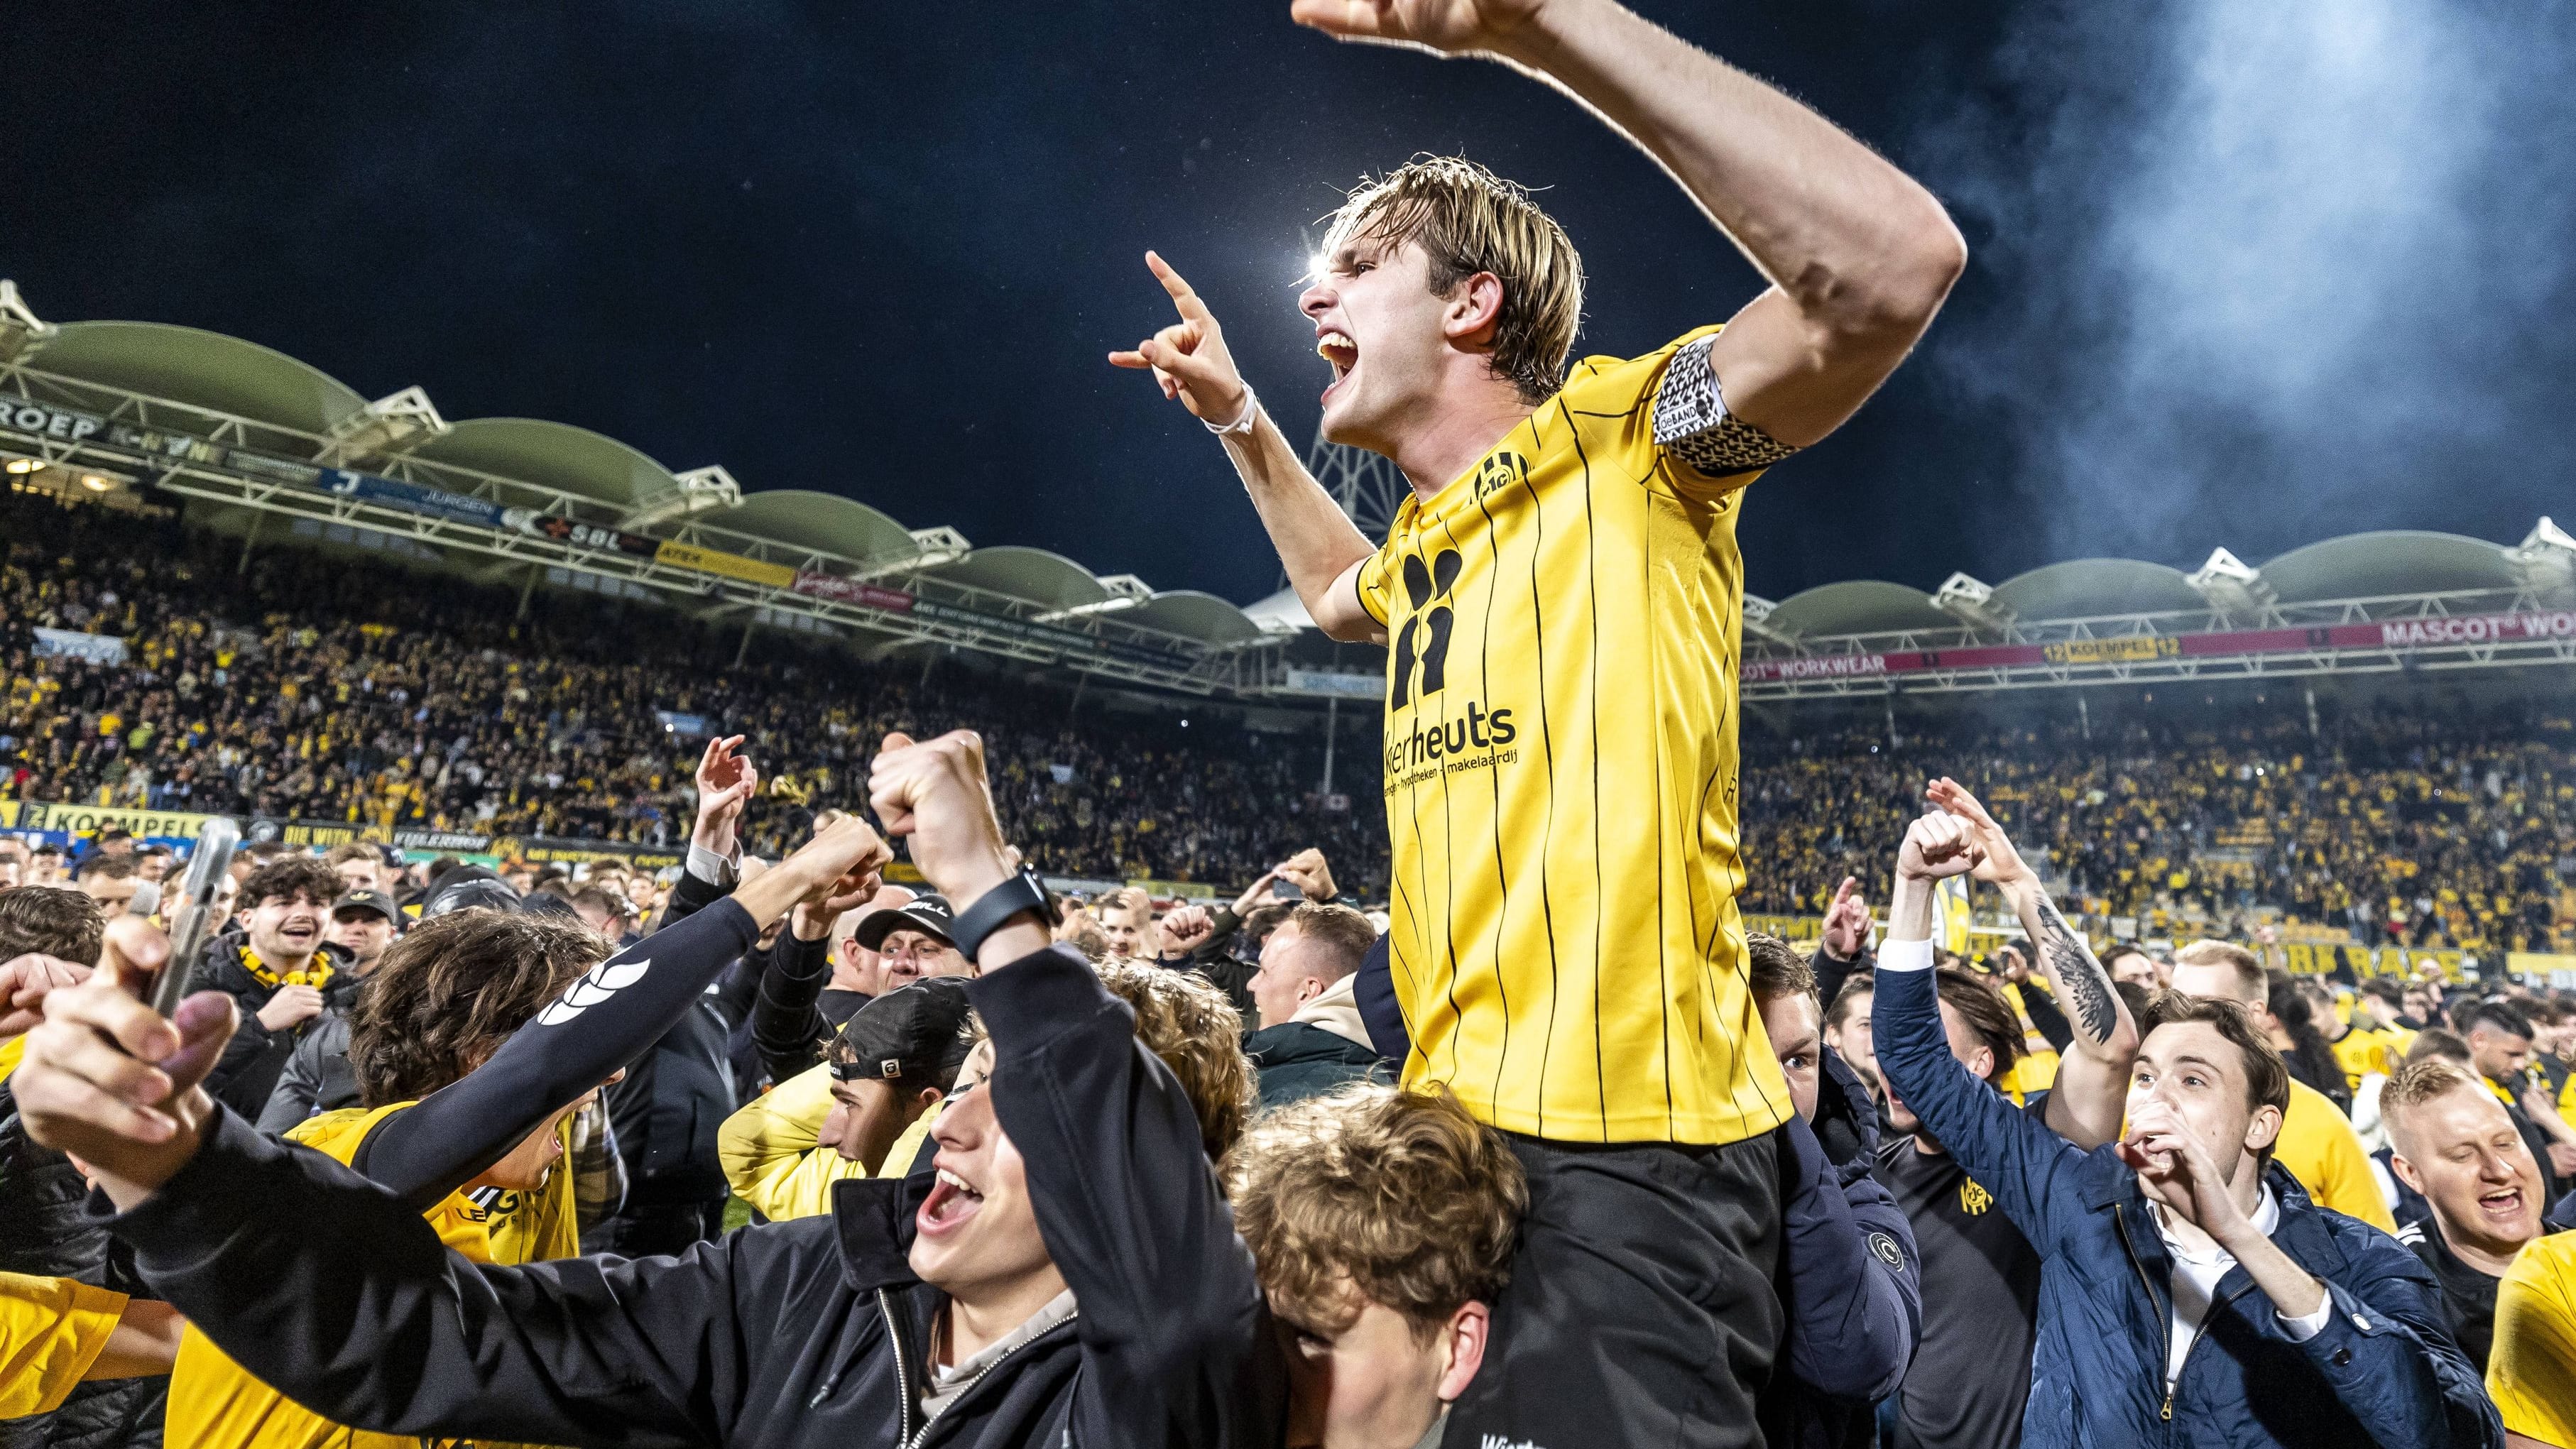 Doppelter Platzsturm: Fans feiern Aufstieg zweimal zu früh | Niederlande